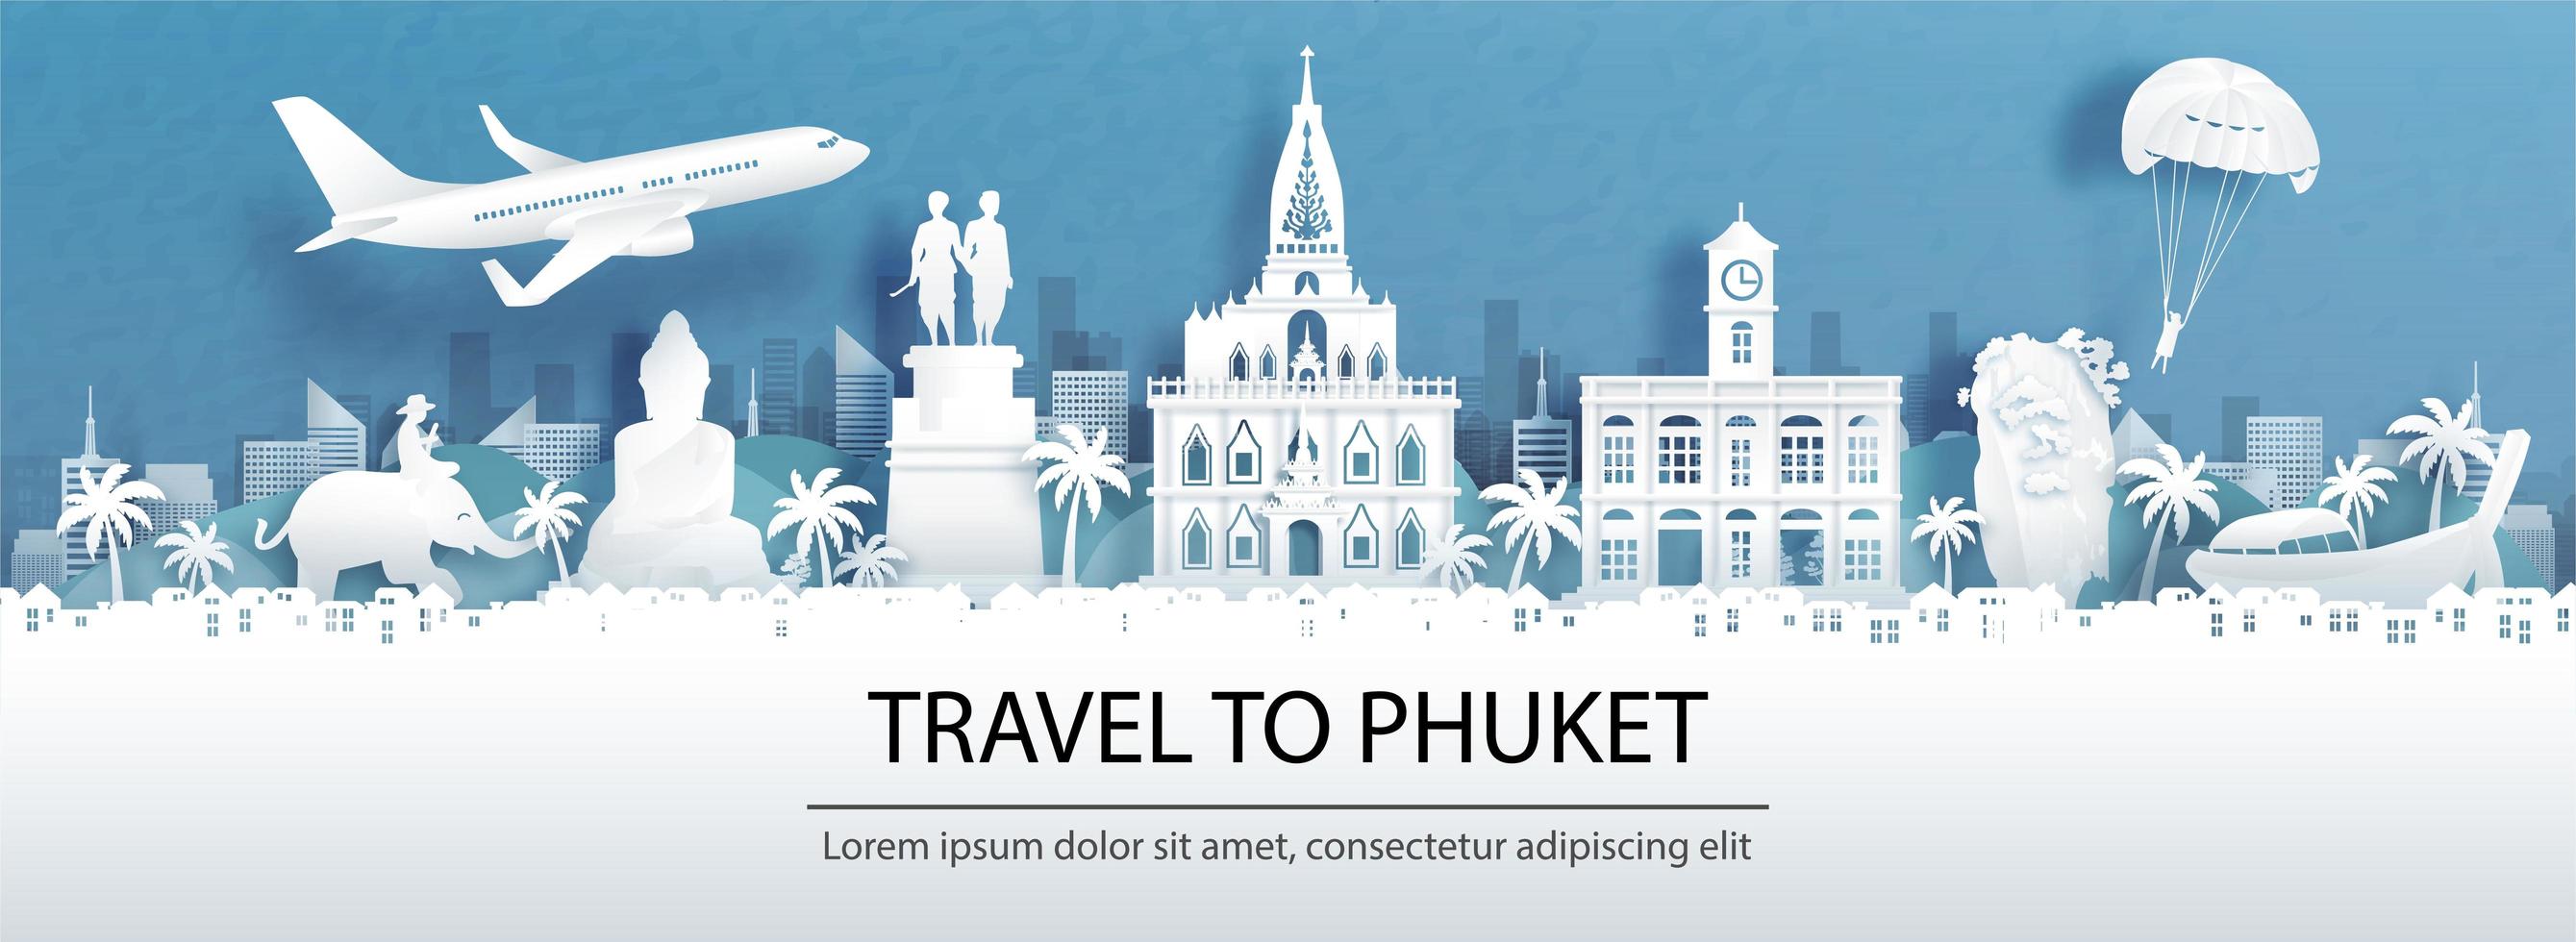 Publicité de voyage pour phuket, Thaïlande avec vue panoramique vecteur